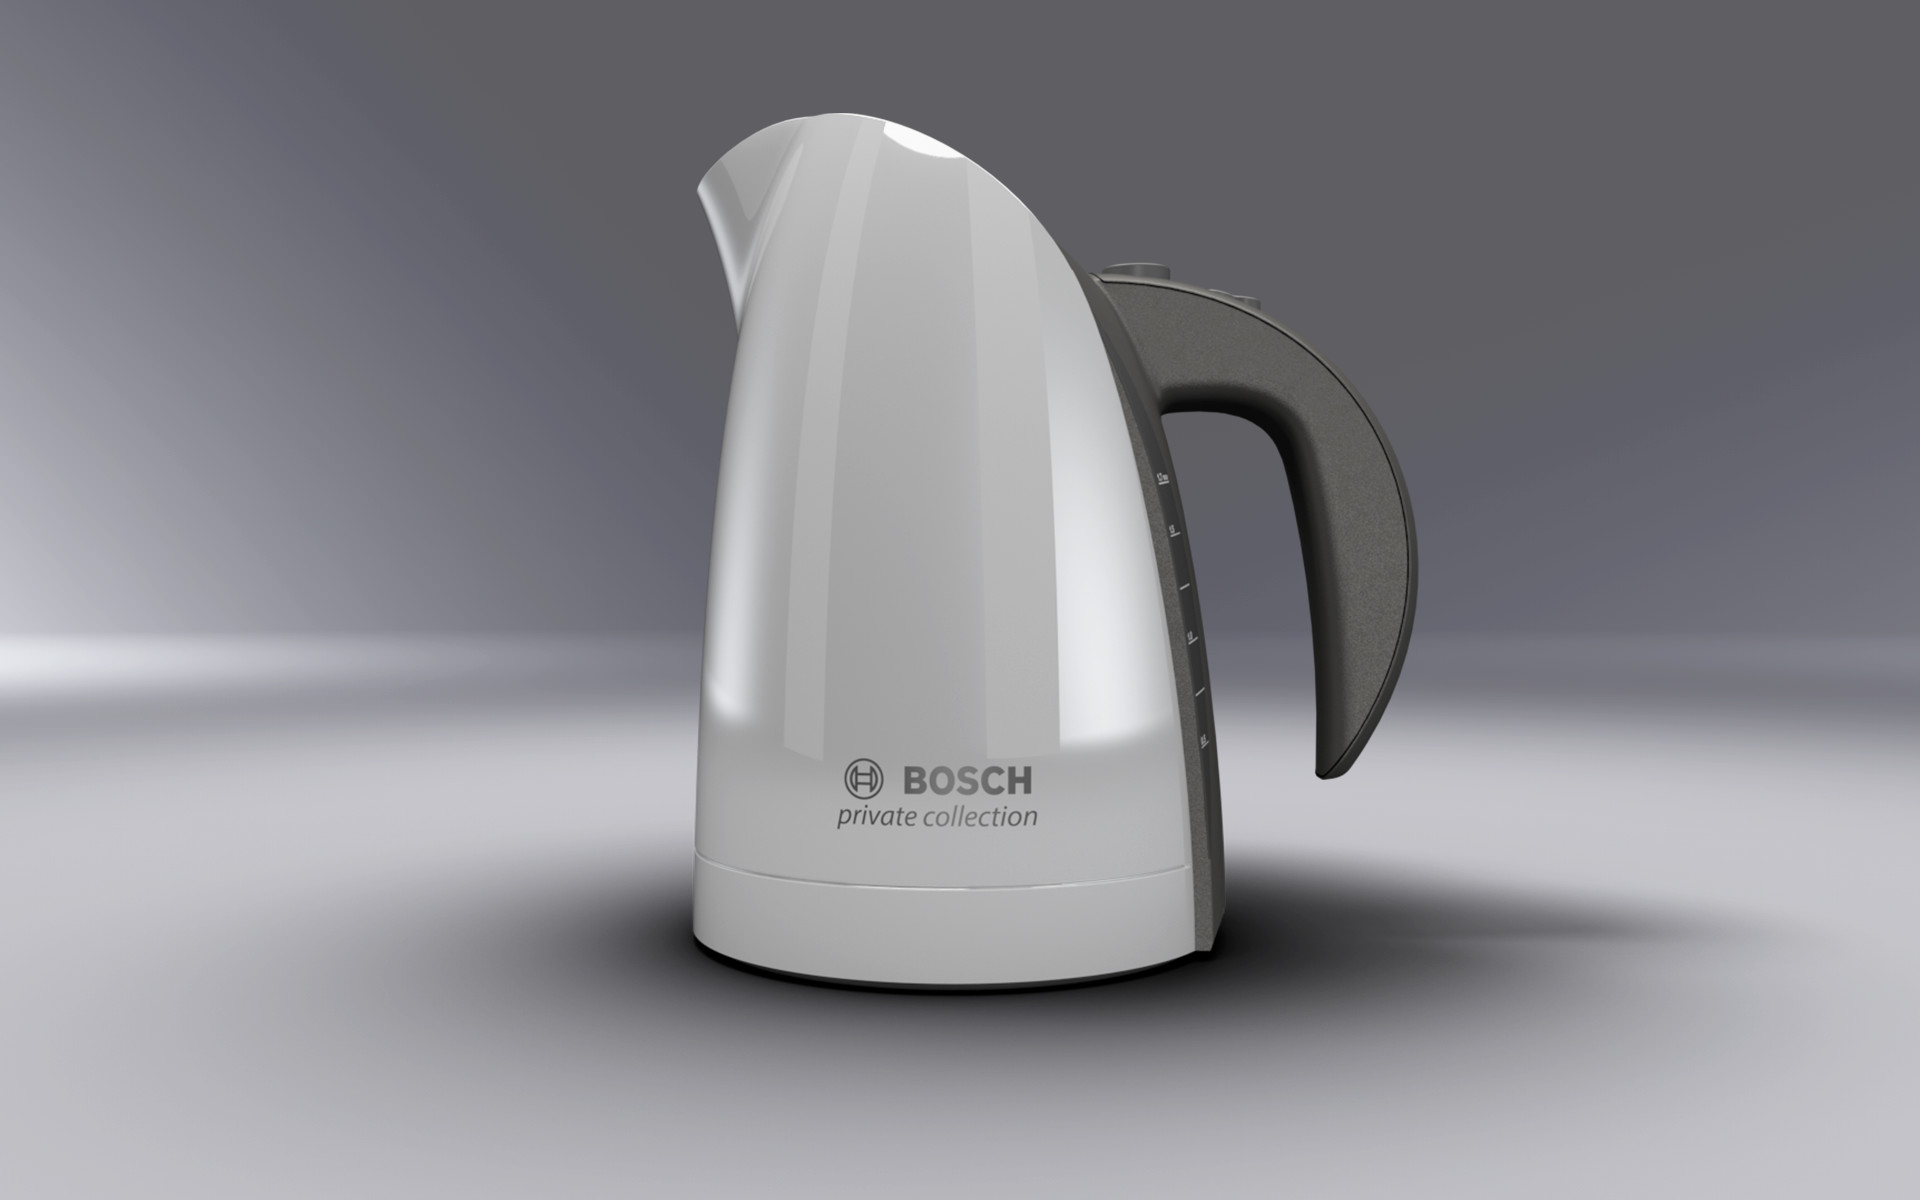 Чайник бош приват коллекшн. Чайник бош приват коллекшн черный. Чайник Bosch 7090. Проточный чайник Bosch. Bosch collection